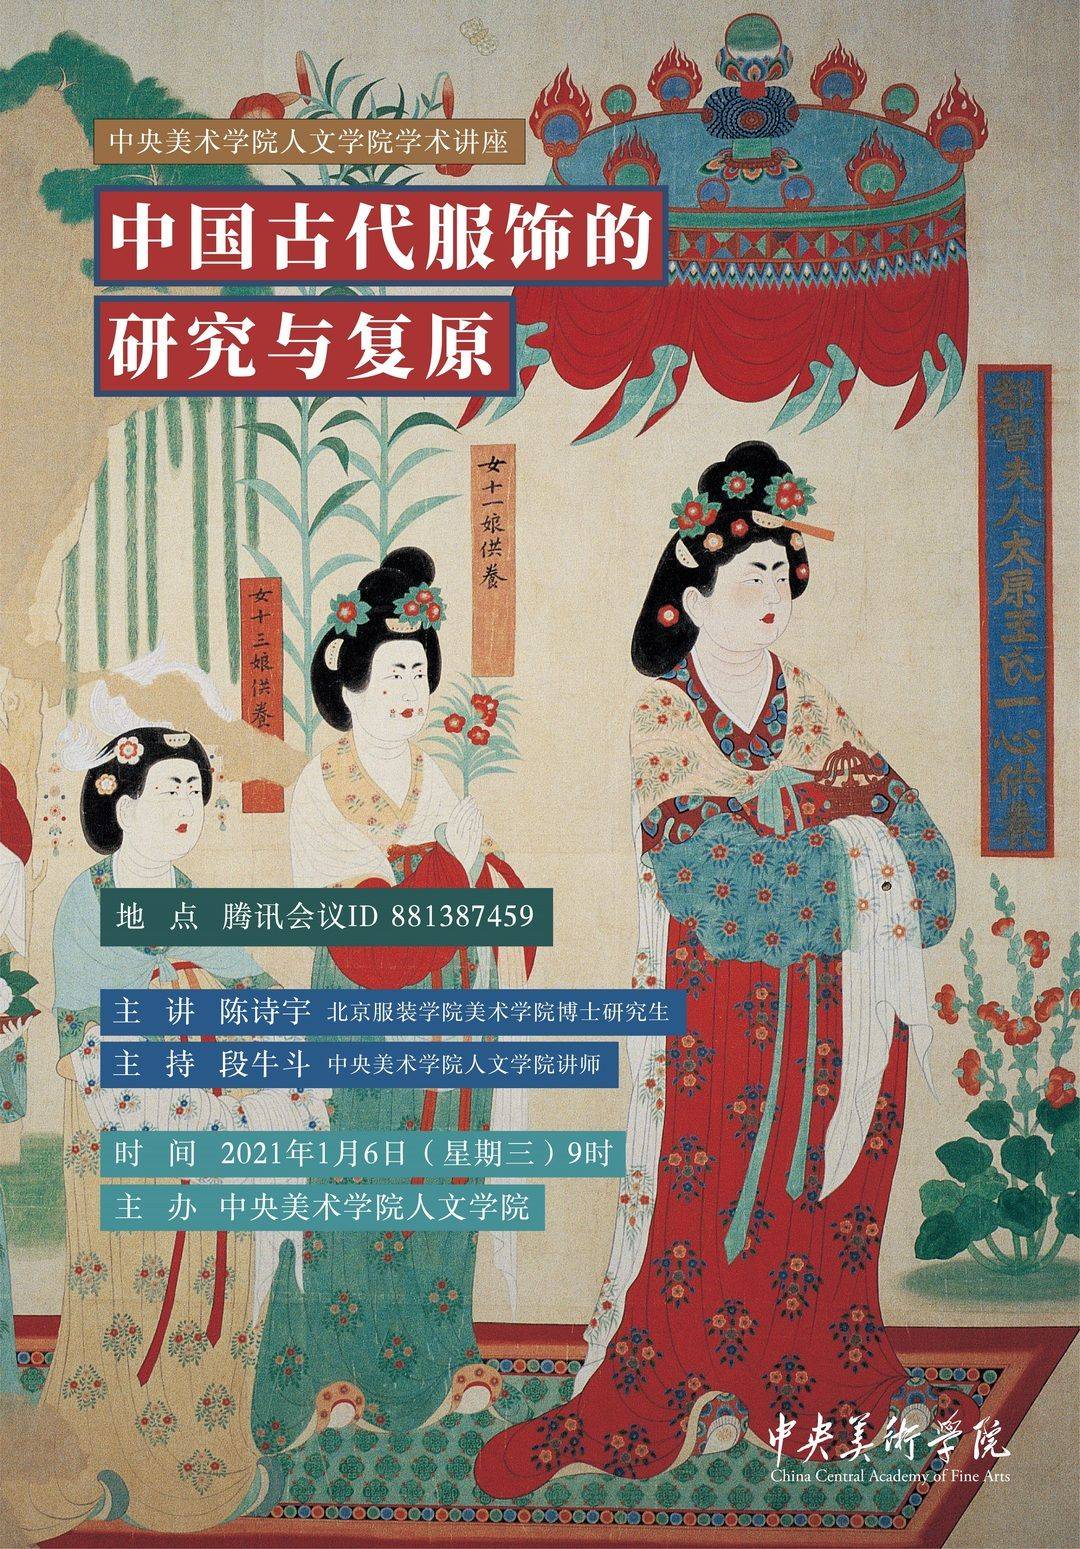 预告丨陈诗宇:中国古代服饰的研究与复原